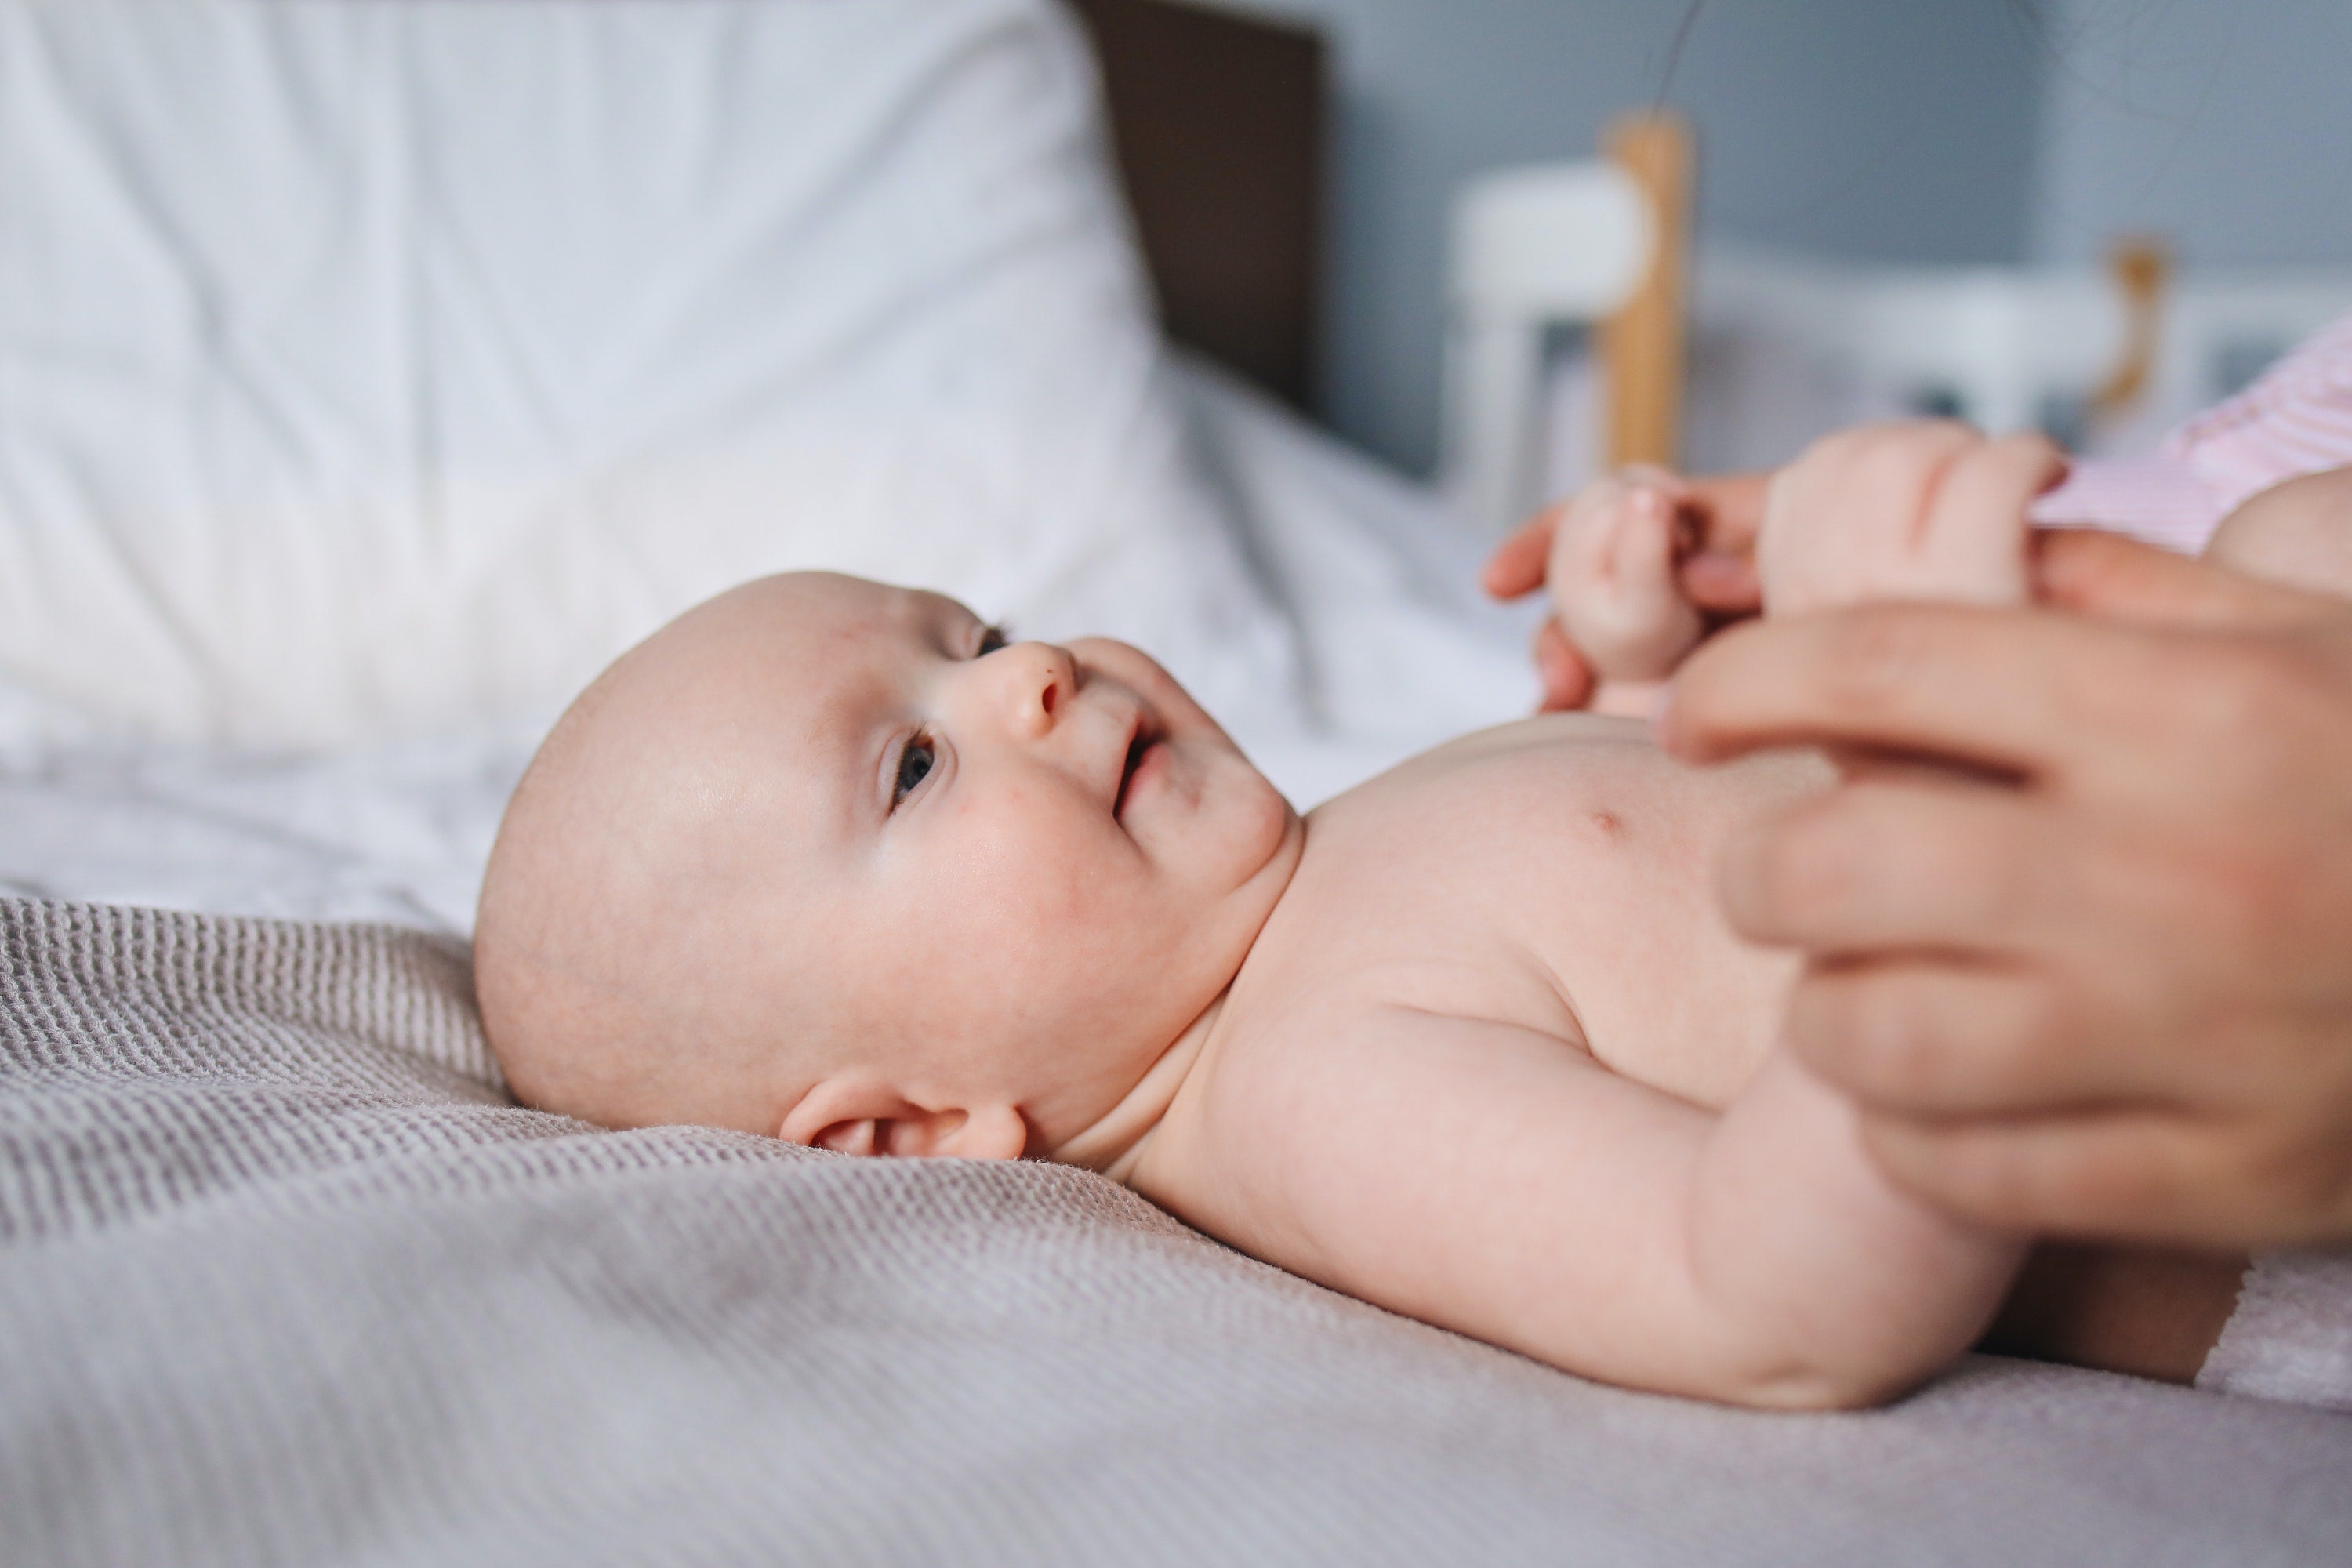 À quelle fréquence faut-il changer la couche de bébé ? – Peaudouce France